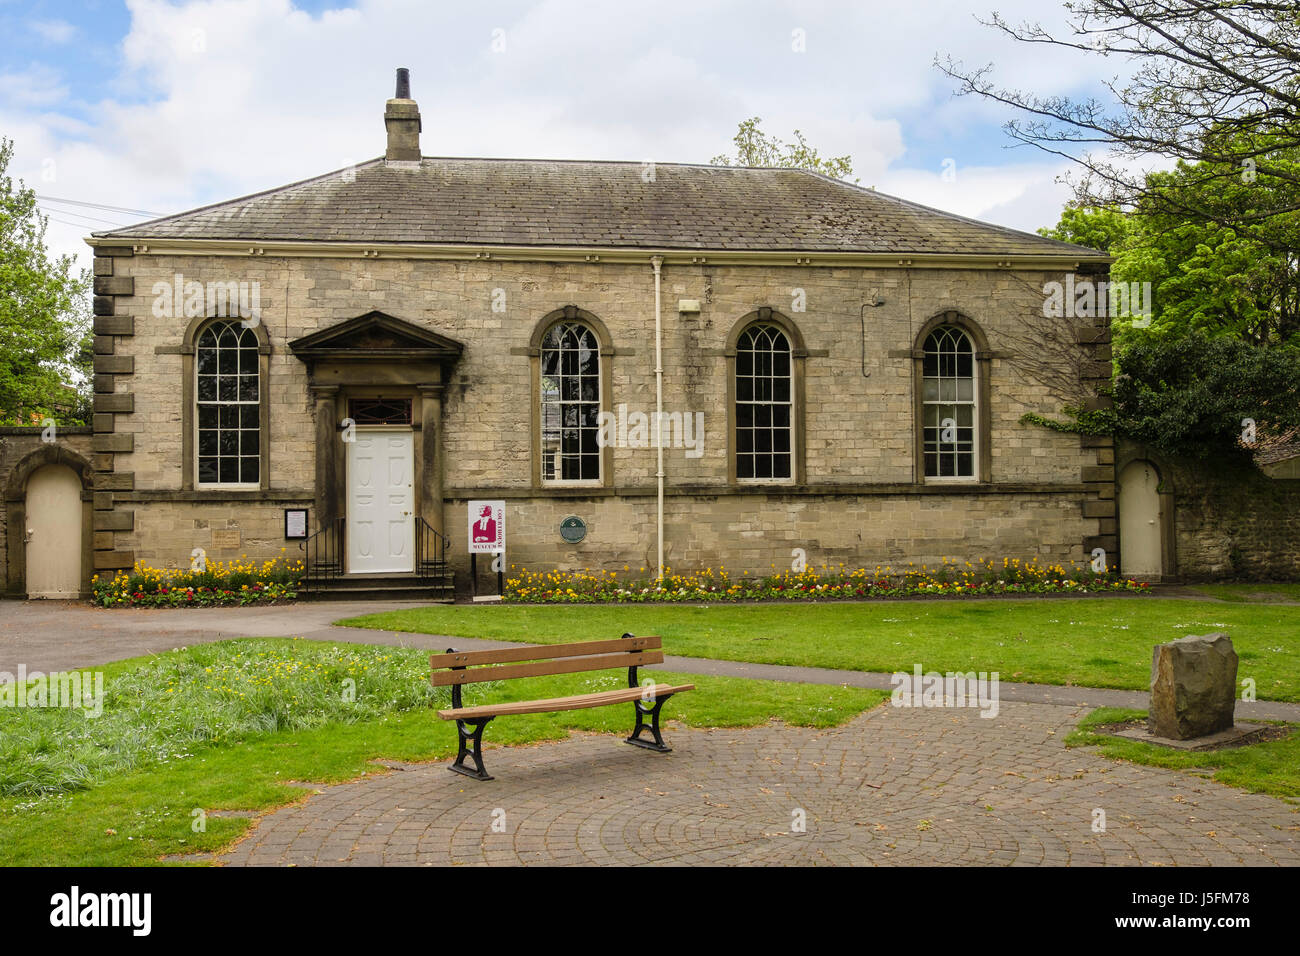 La liberté Courthouse Museum vers 1830. Site de palais des archevêques d'York. Ripon, North Yorkshire, England, UK, Grande-Bretagne Banque D'Images